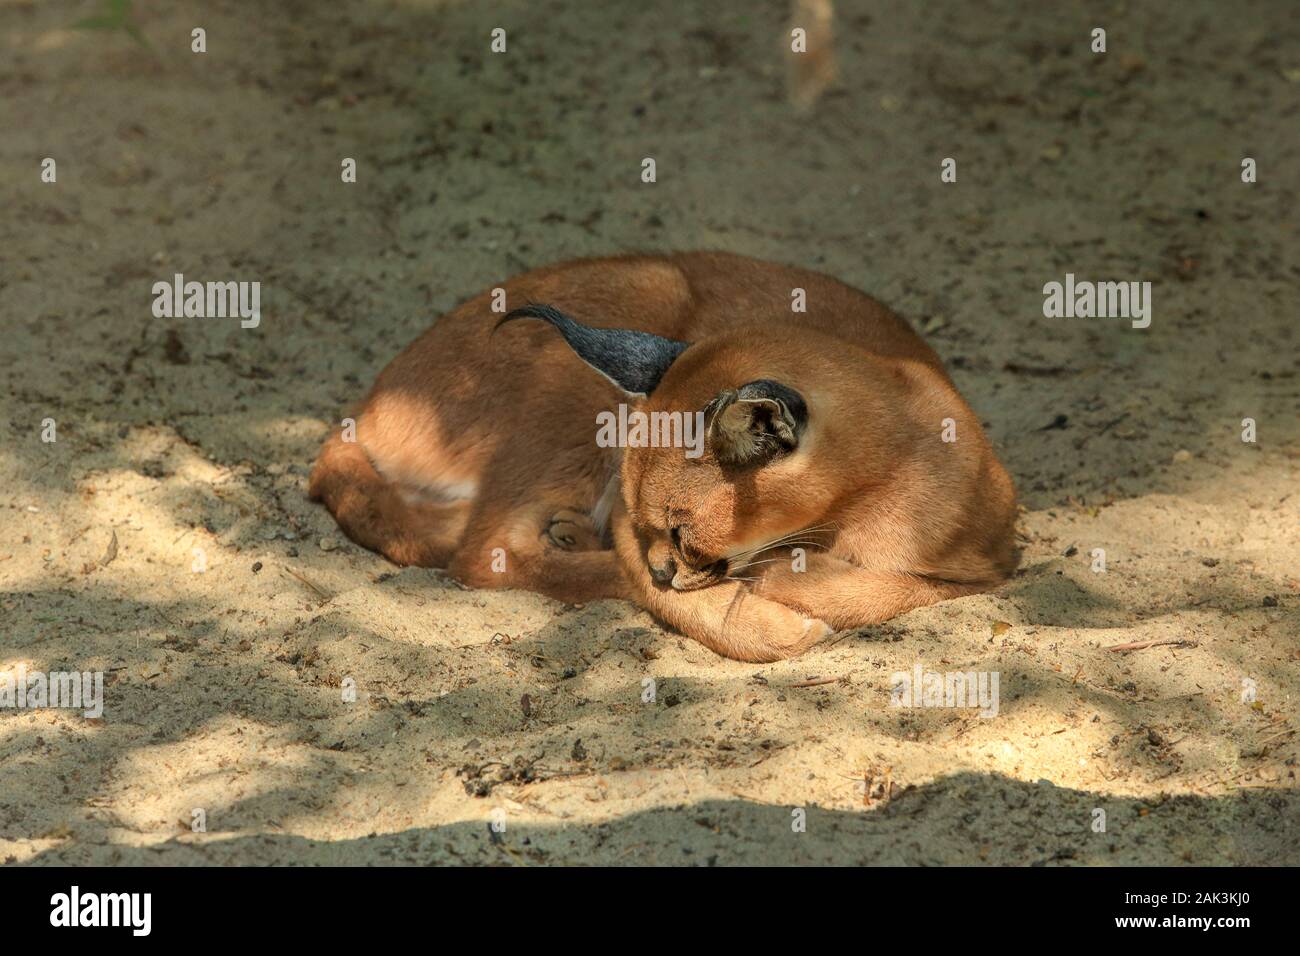 Sleeping in the sand caracal. (Caracal caracal) Stock Photo